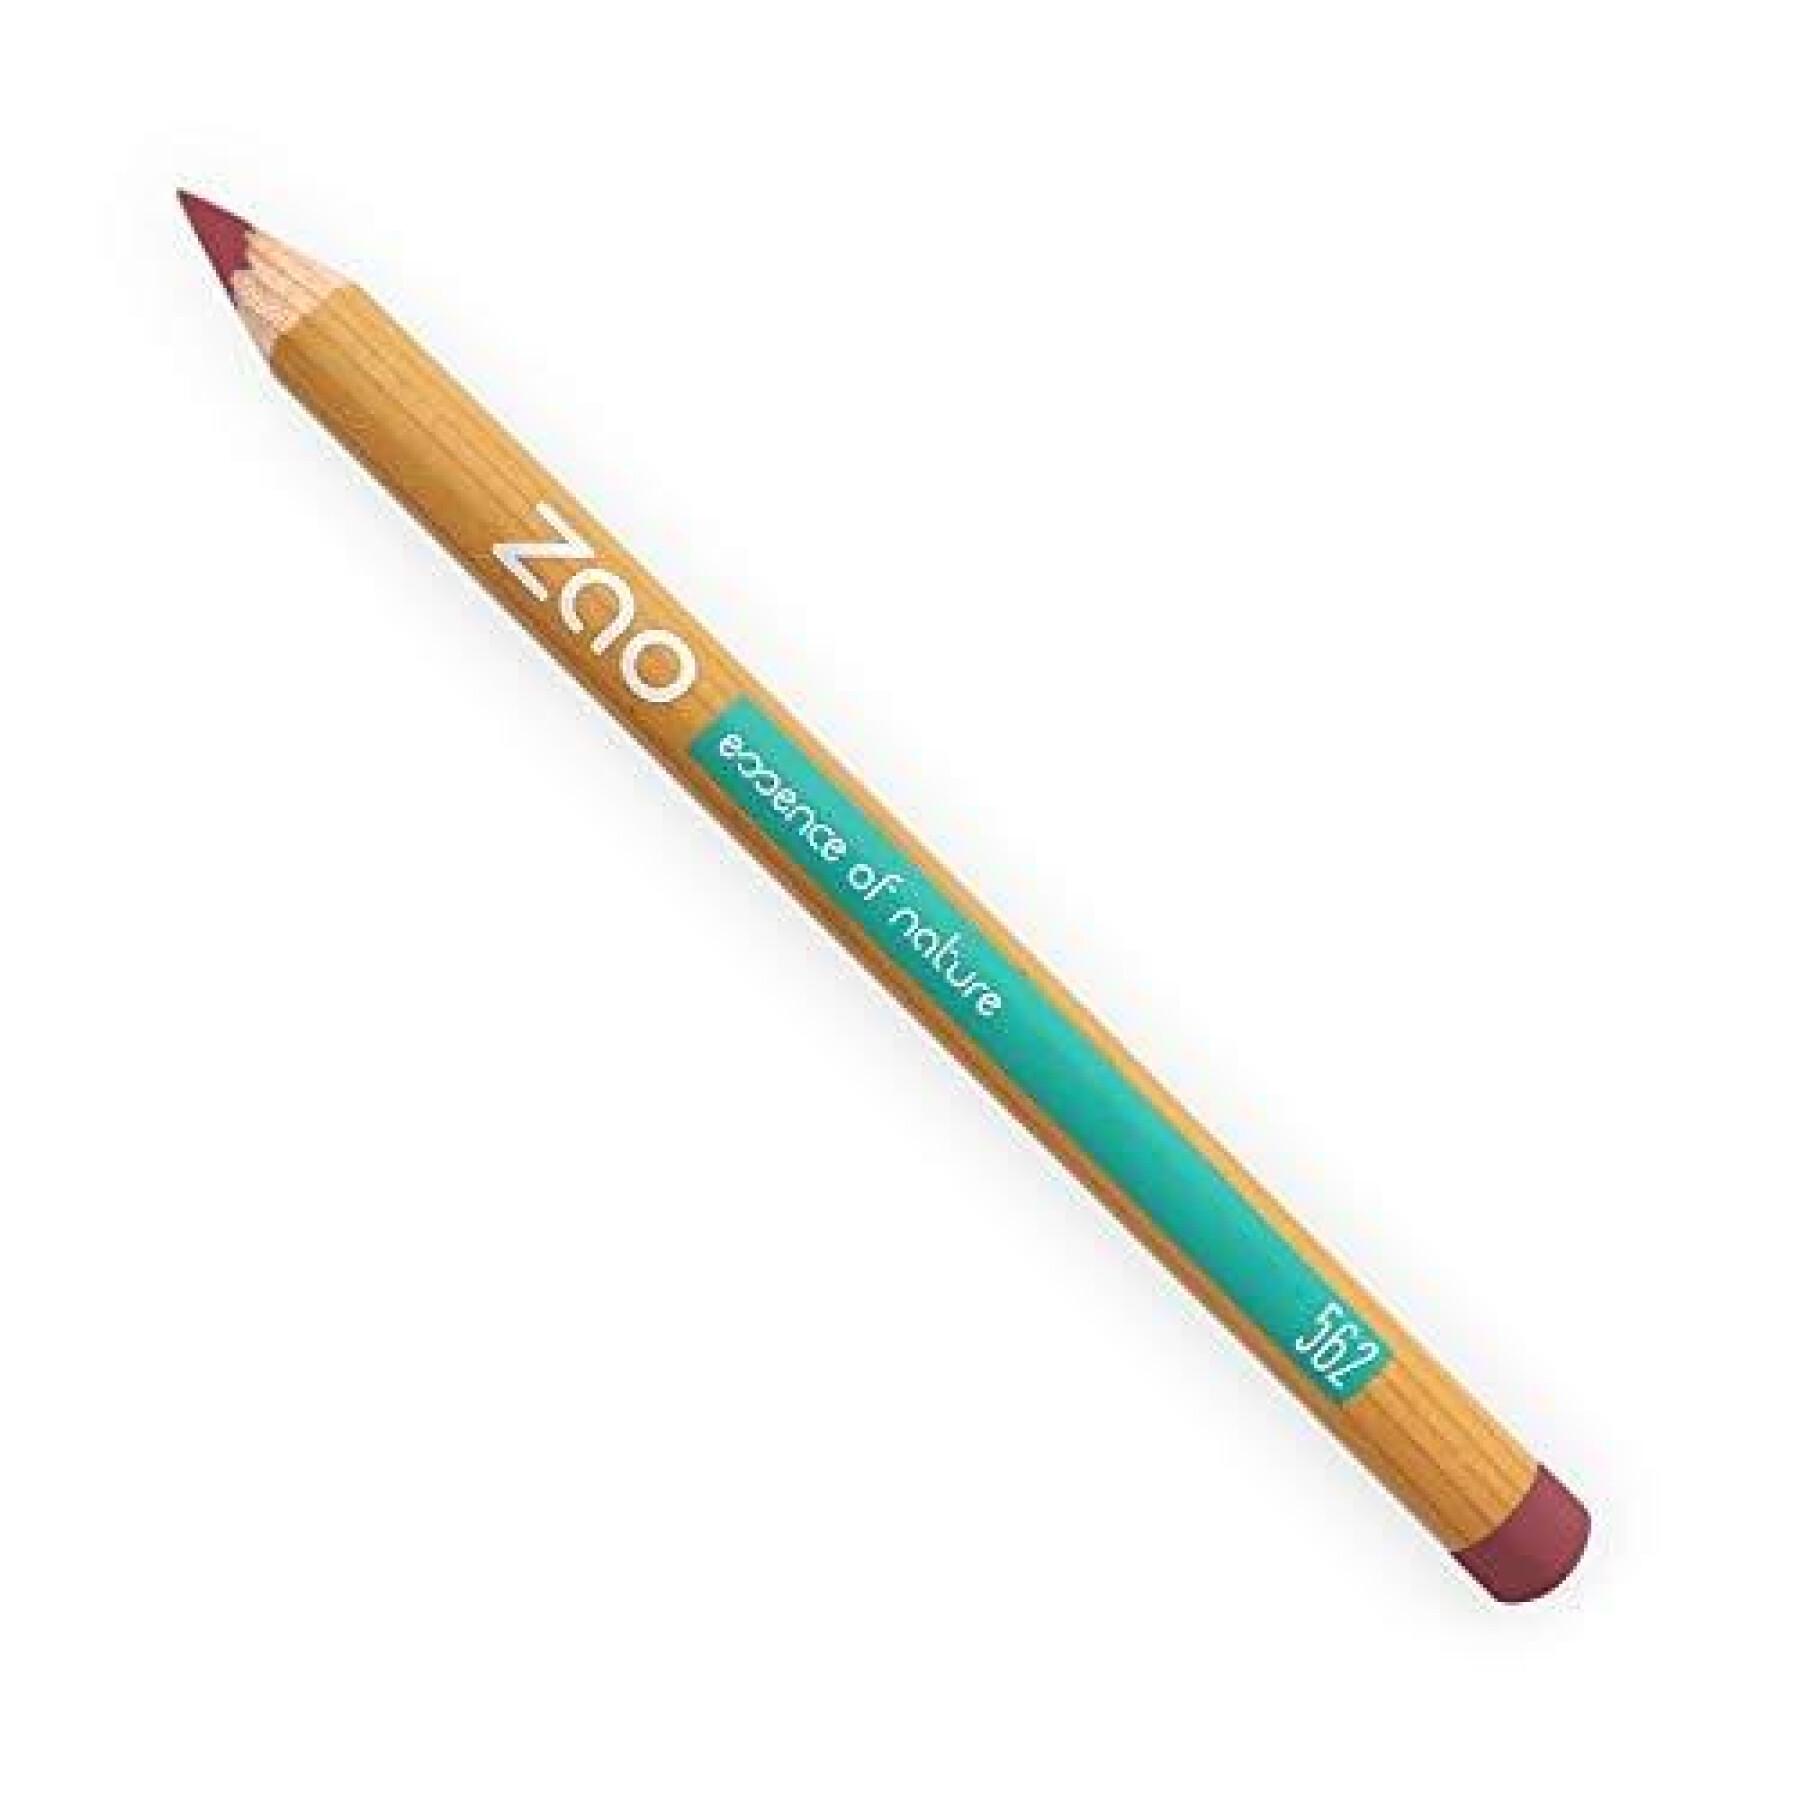 Ołówek wielofunkcyjny 562 palisander damski Zao